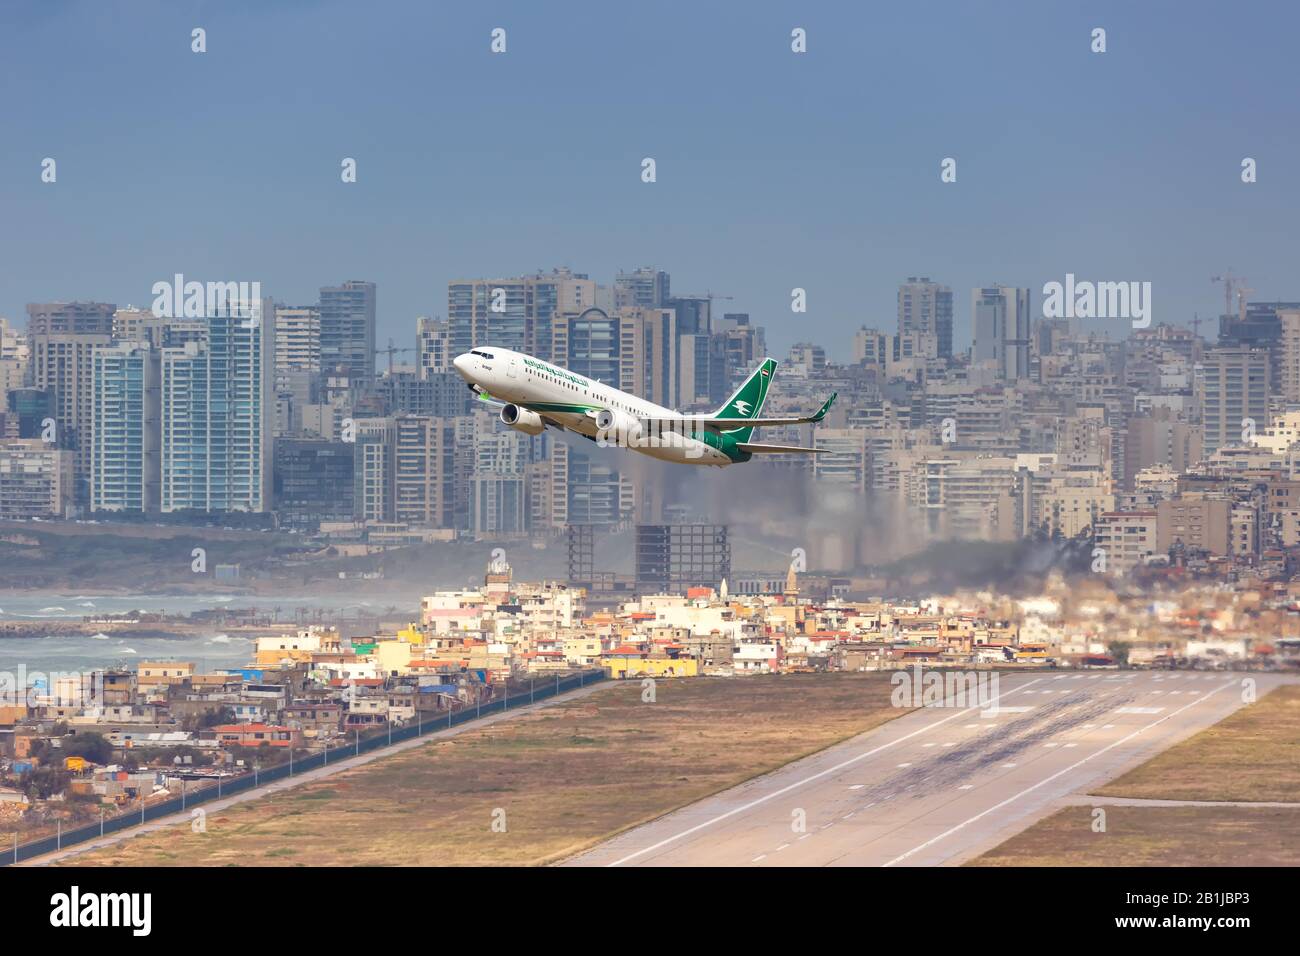 Beirut, Lebanon – February 16, 2019: Iraqi Airways Boeing 737 airplane at Beirut airport (BEY) in Lebanon. Stock Photo